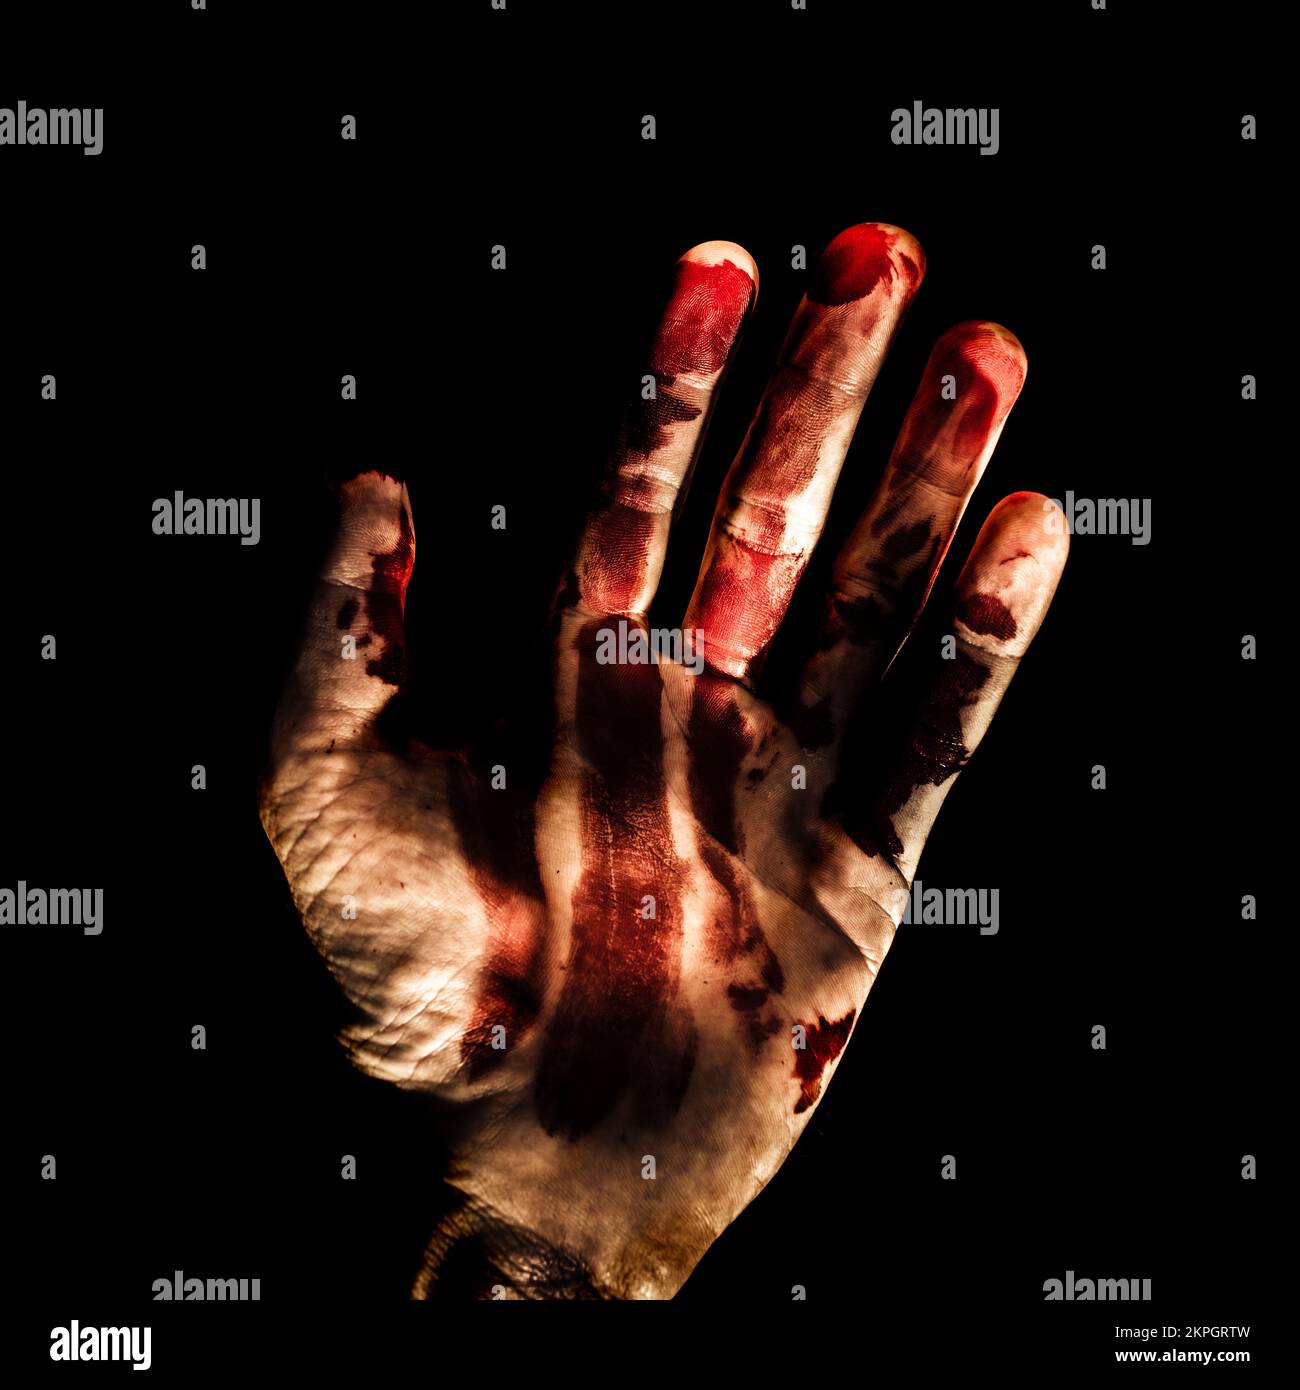 Una foto de terror oscura y espeluznante en una mano asesina saludando un siniestro saludo con dedos manchados de sangre y palma. Bienvenido a su habitación Foto de stock